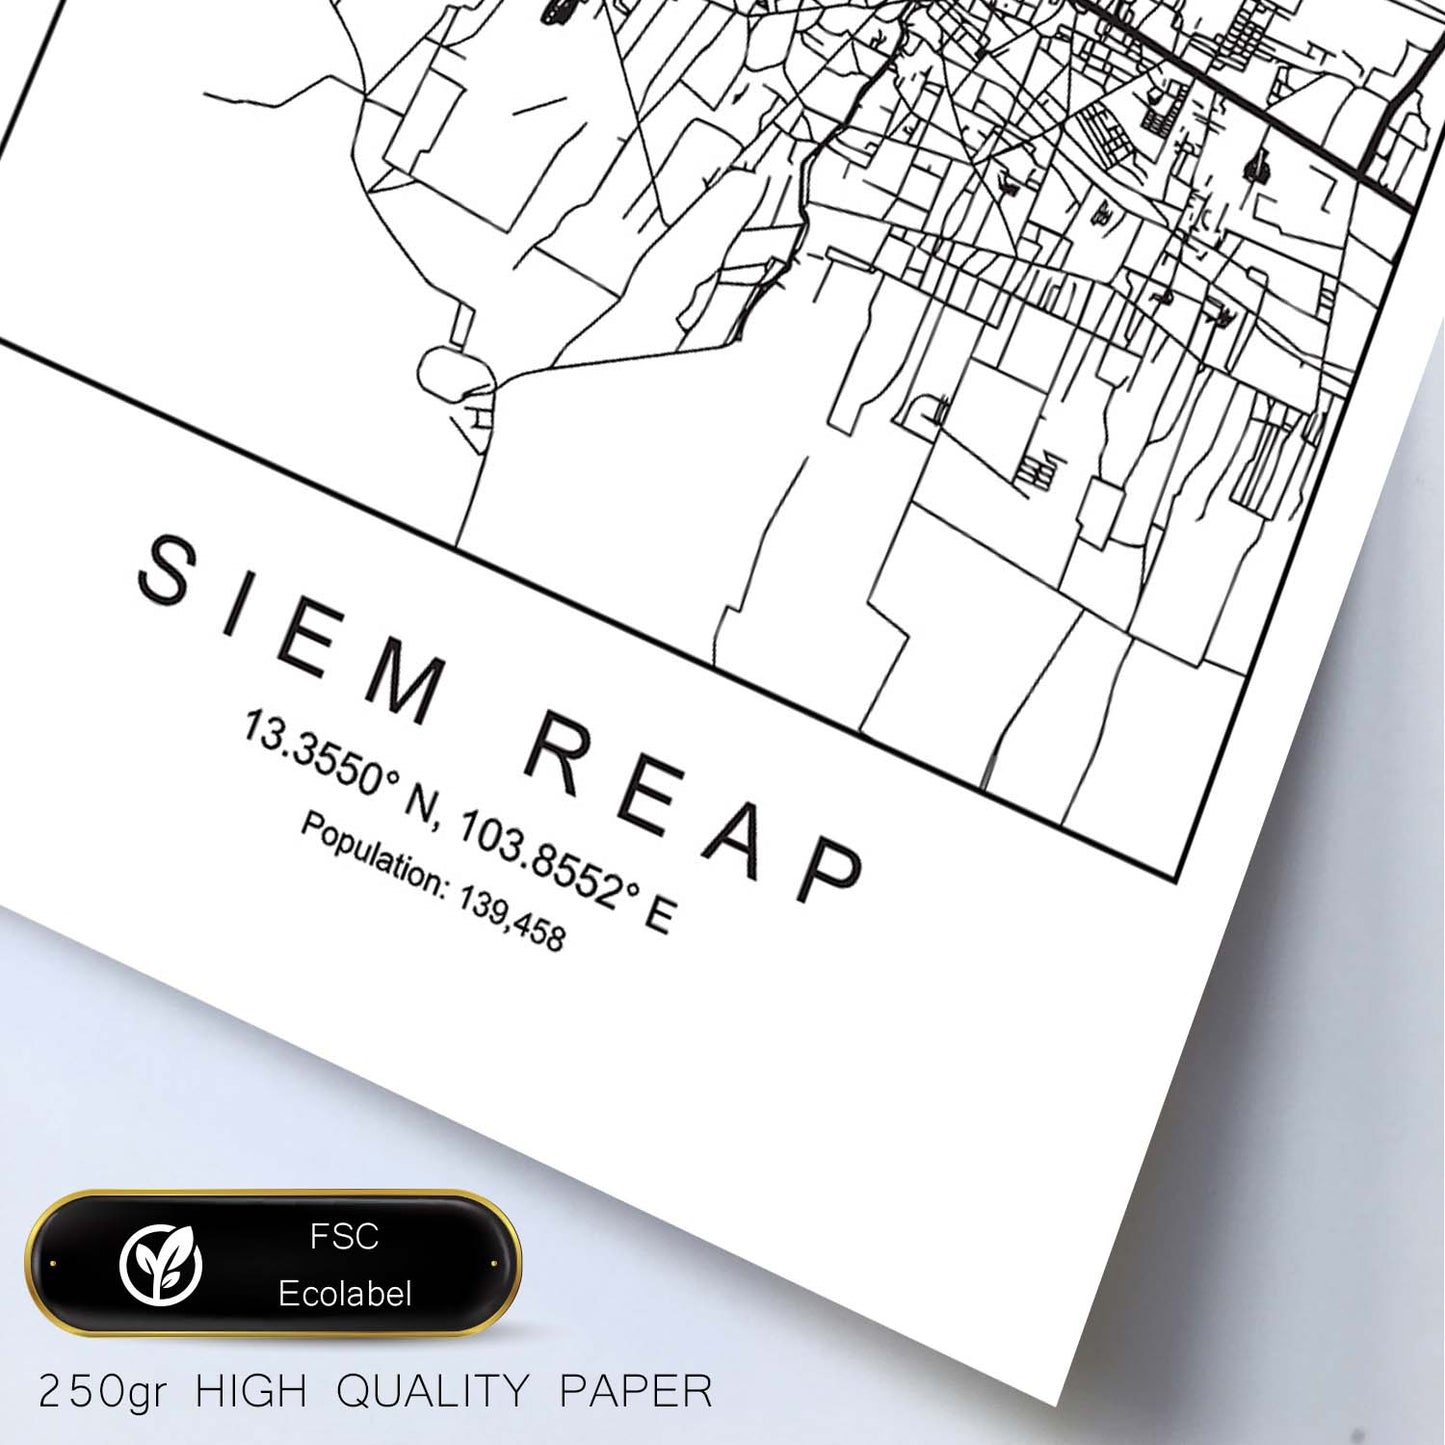 Lámina mapa de la ciudad Siem reap estilo nordico en blanco y negro.-Artwork-Nacnic-Nacnic Estudio SL